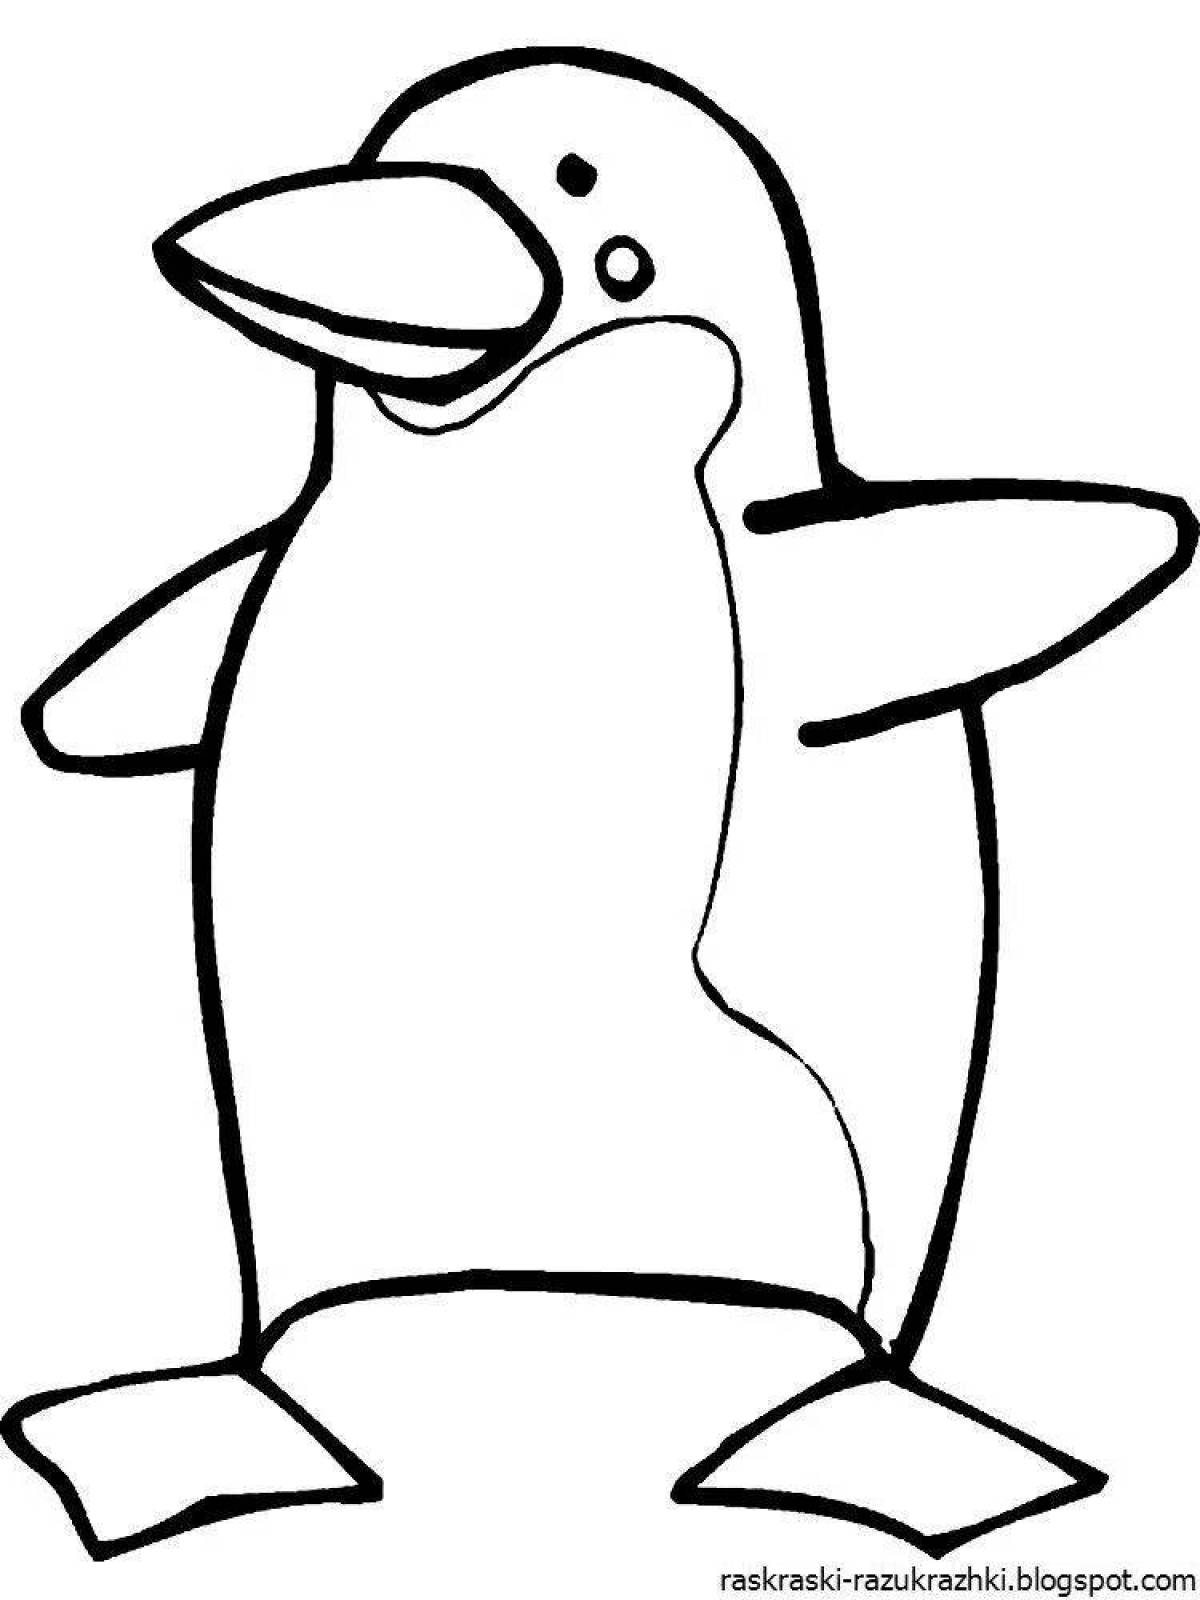 Раскраска пингвин с причудливым узором